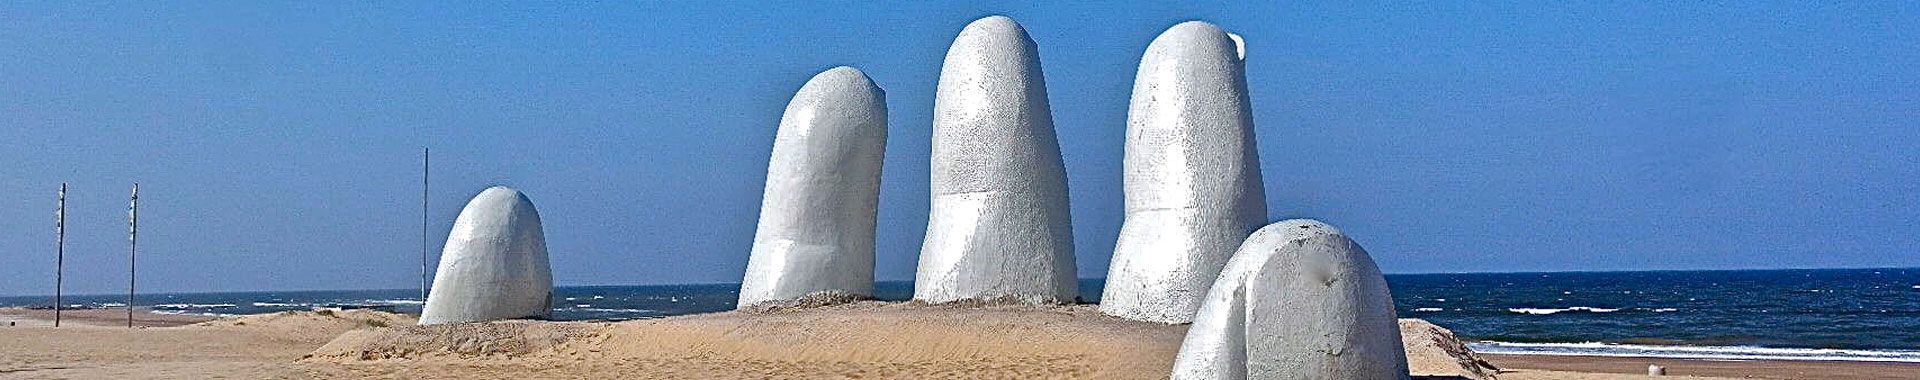 Uruguay - Punta del Este - Lugares